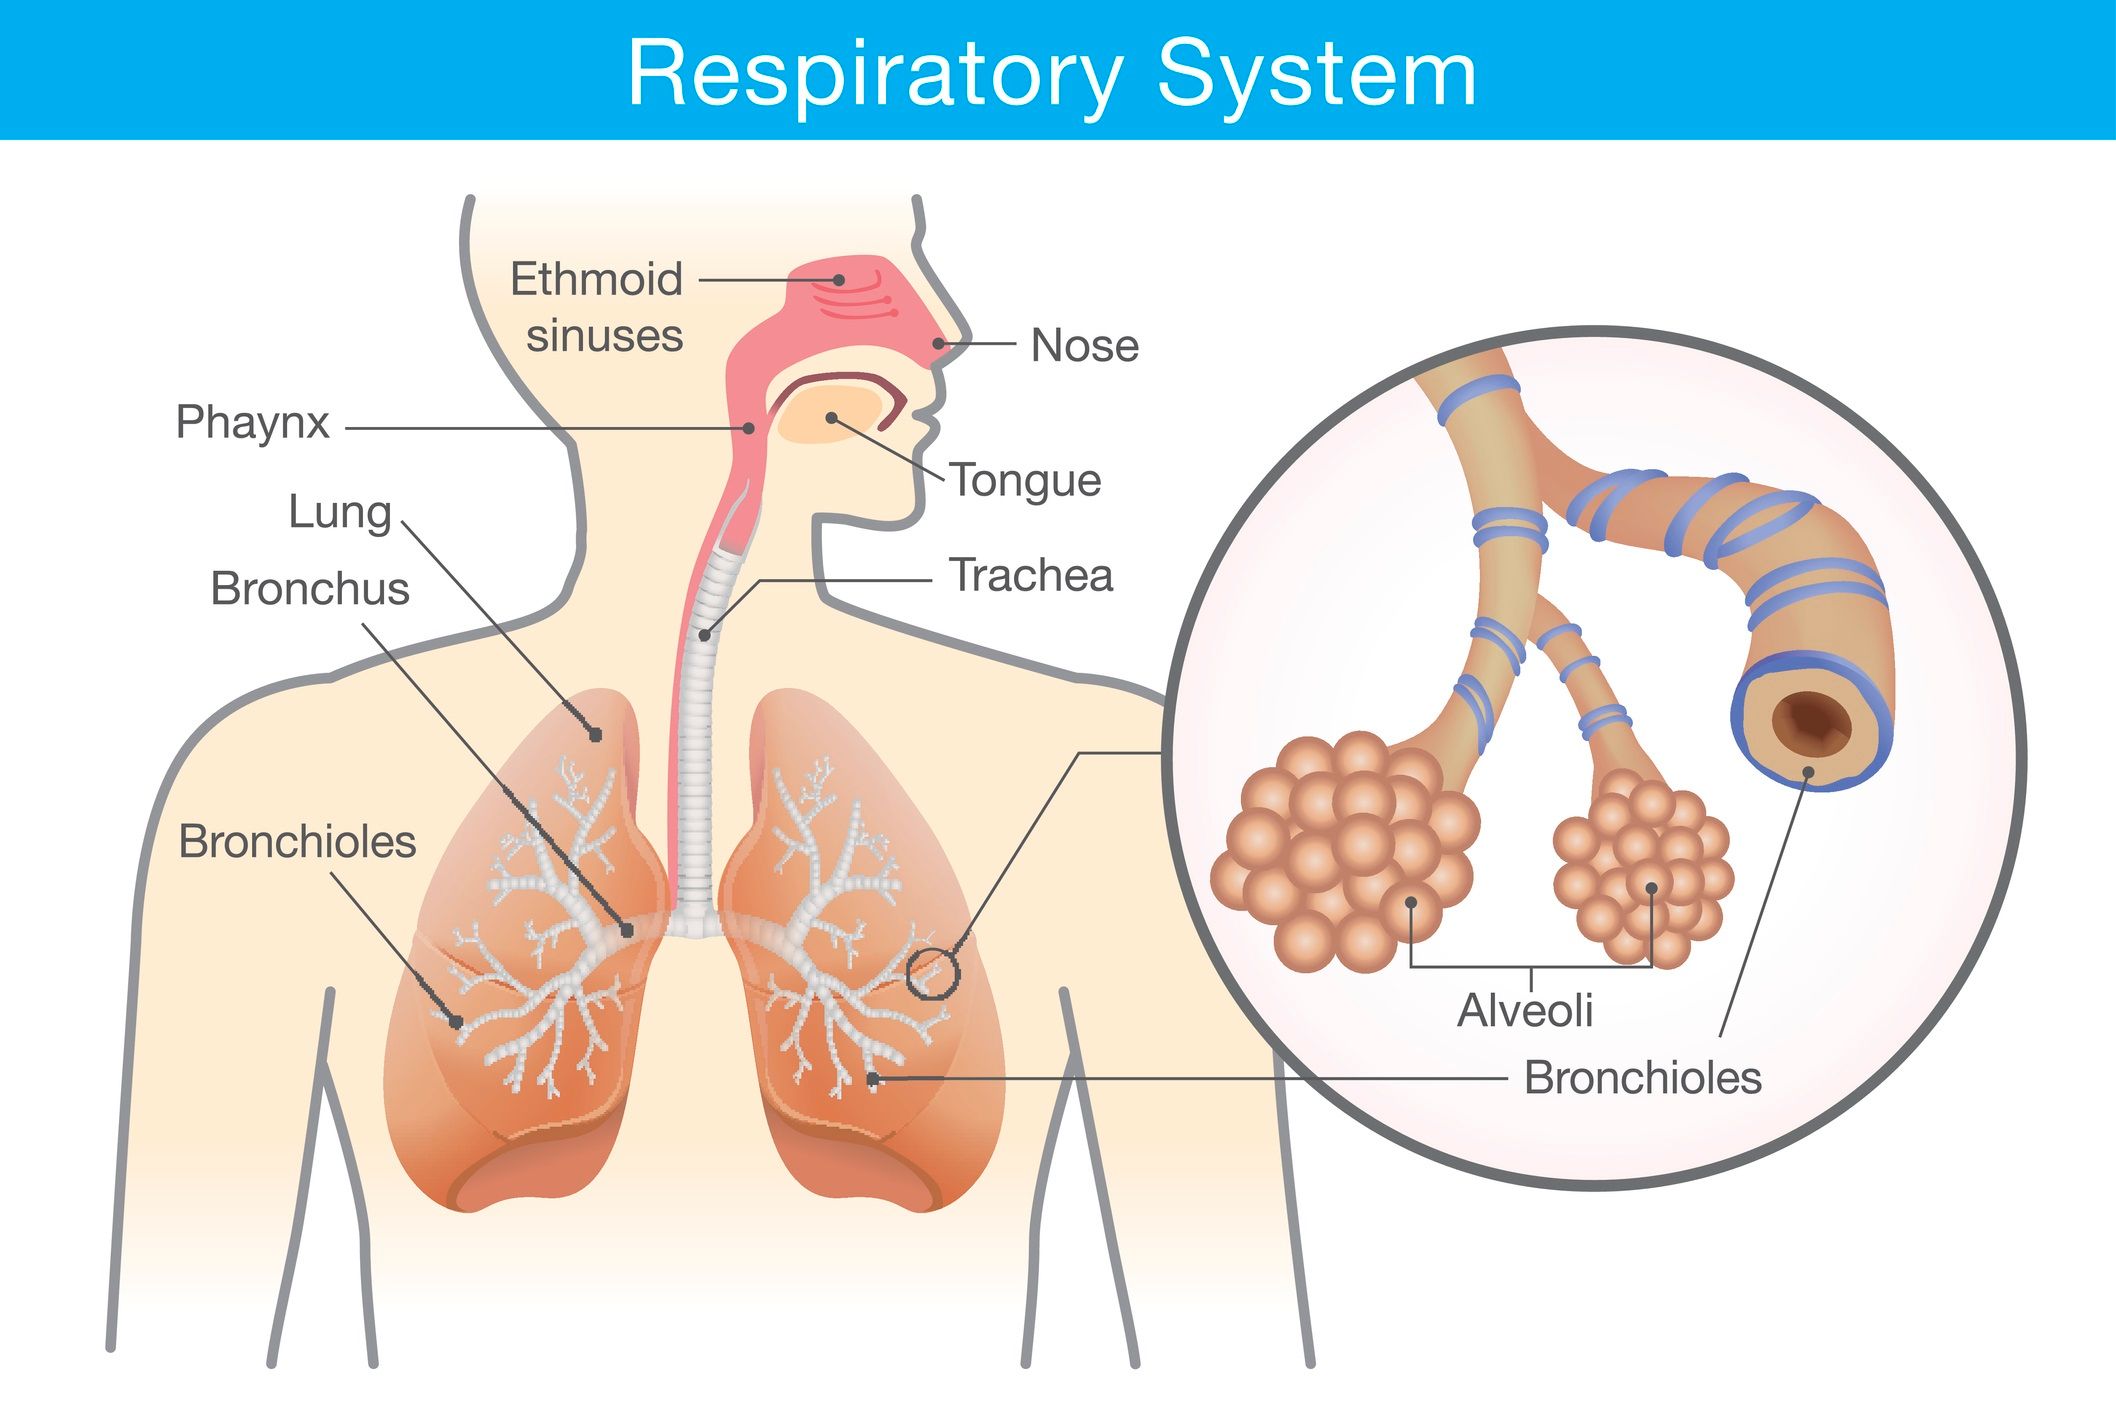 struttura apparato respiratorio